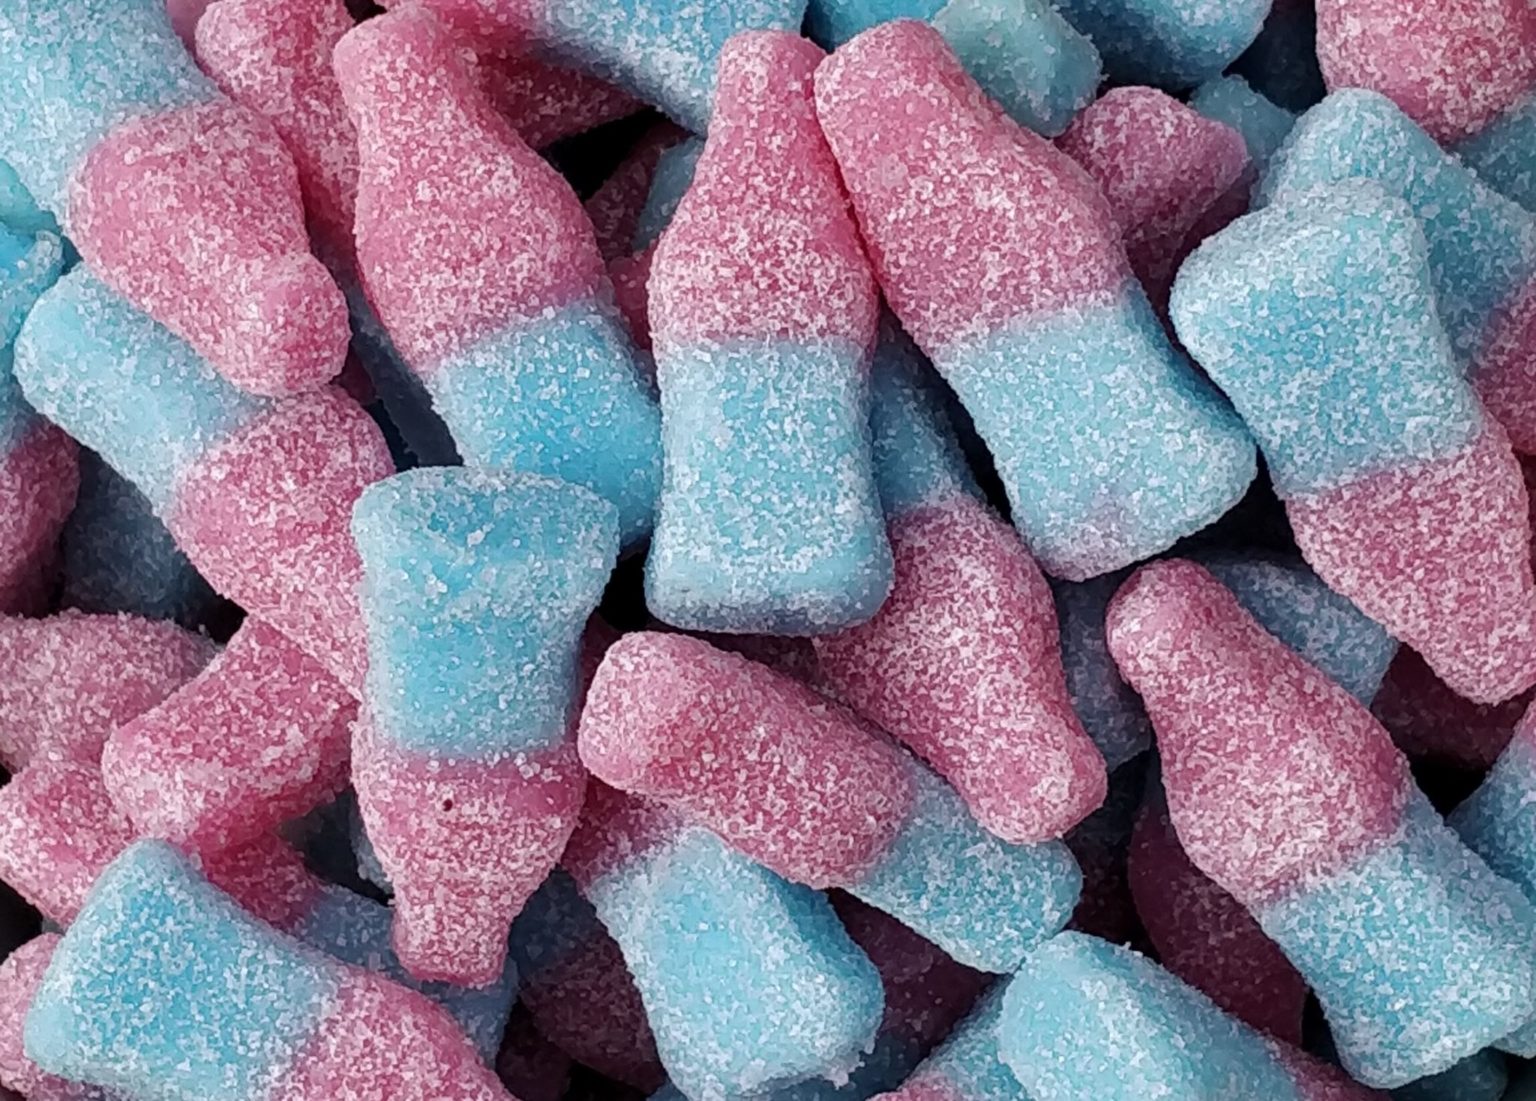 Fizzy Bubblegum Bottles 3kg Bag | Sweets Shop UK